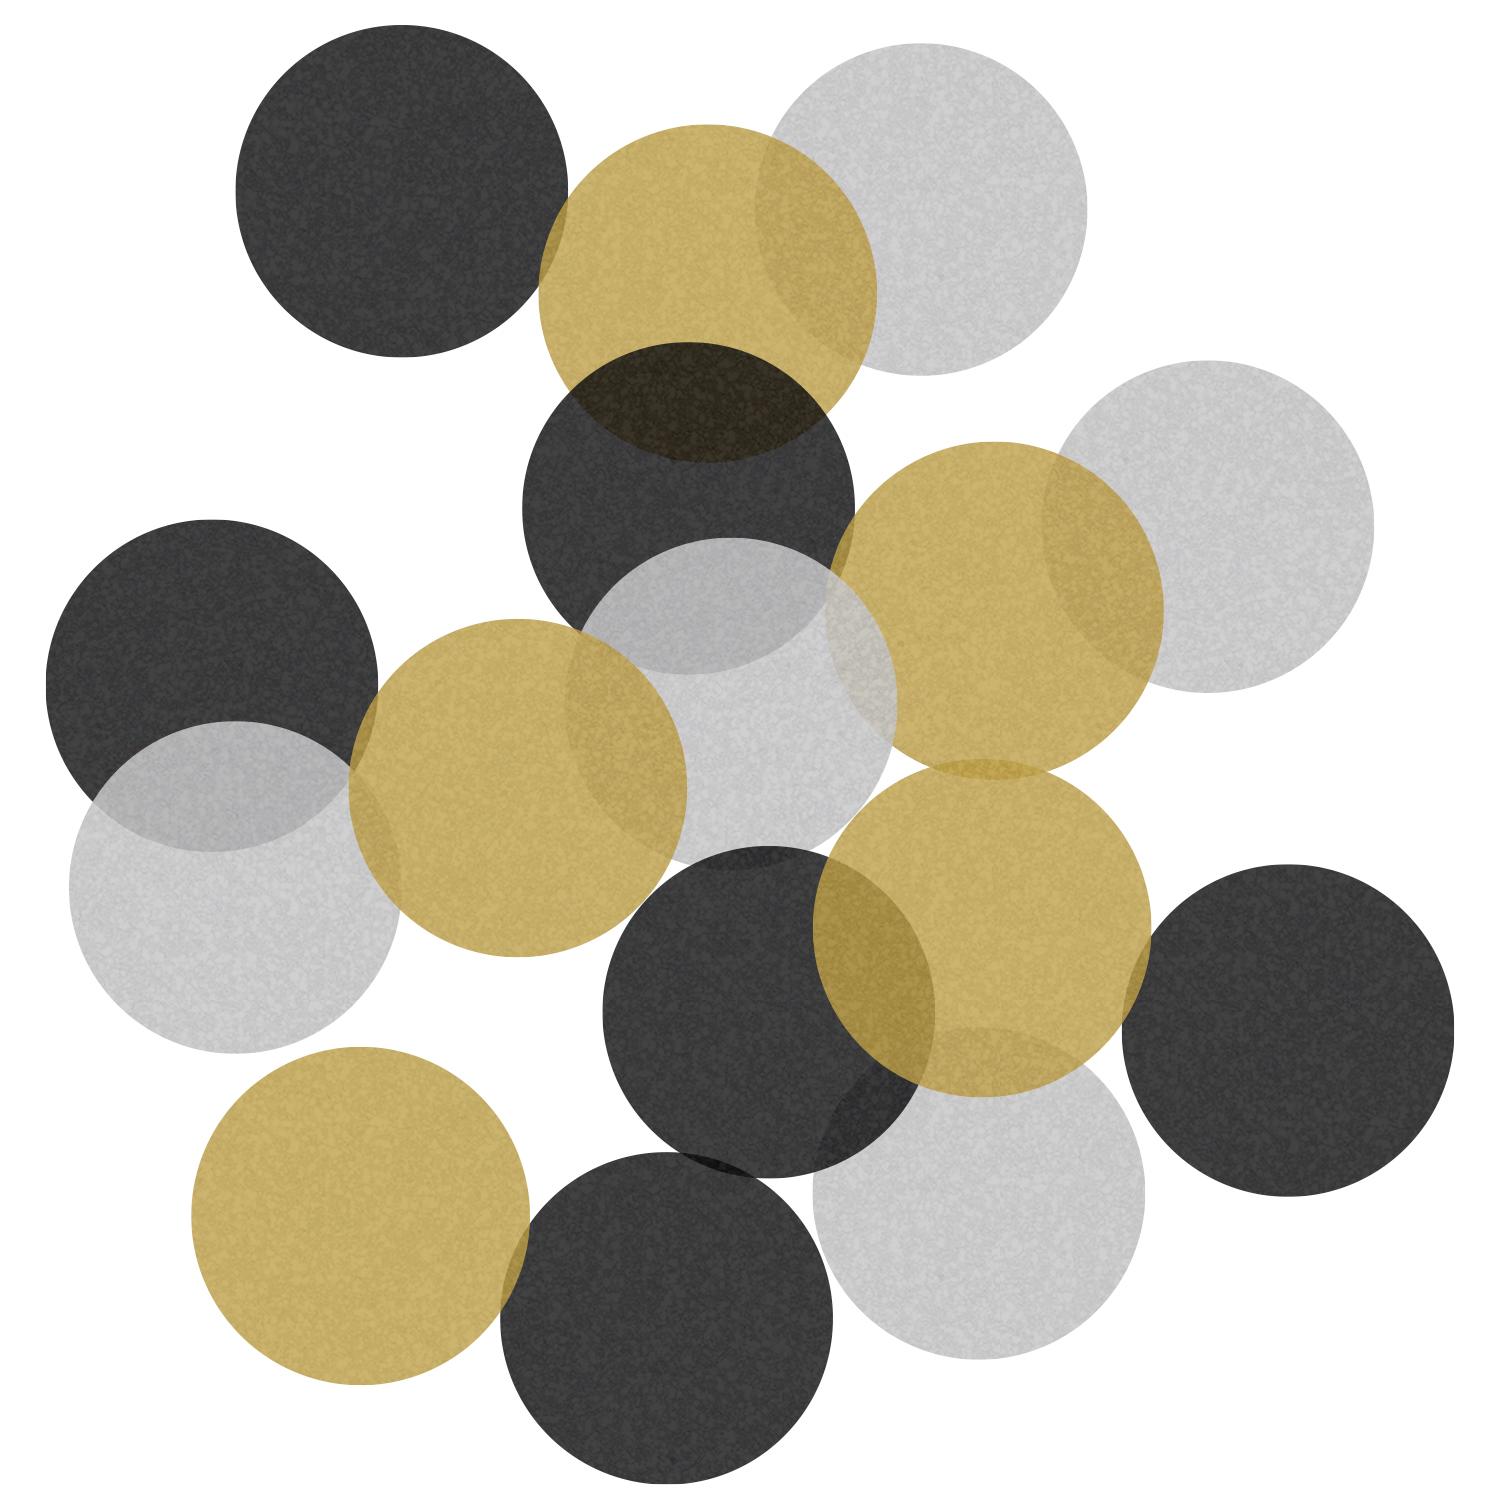 Paper Confetti Mix of Black, Silver & Gold